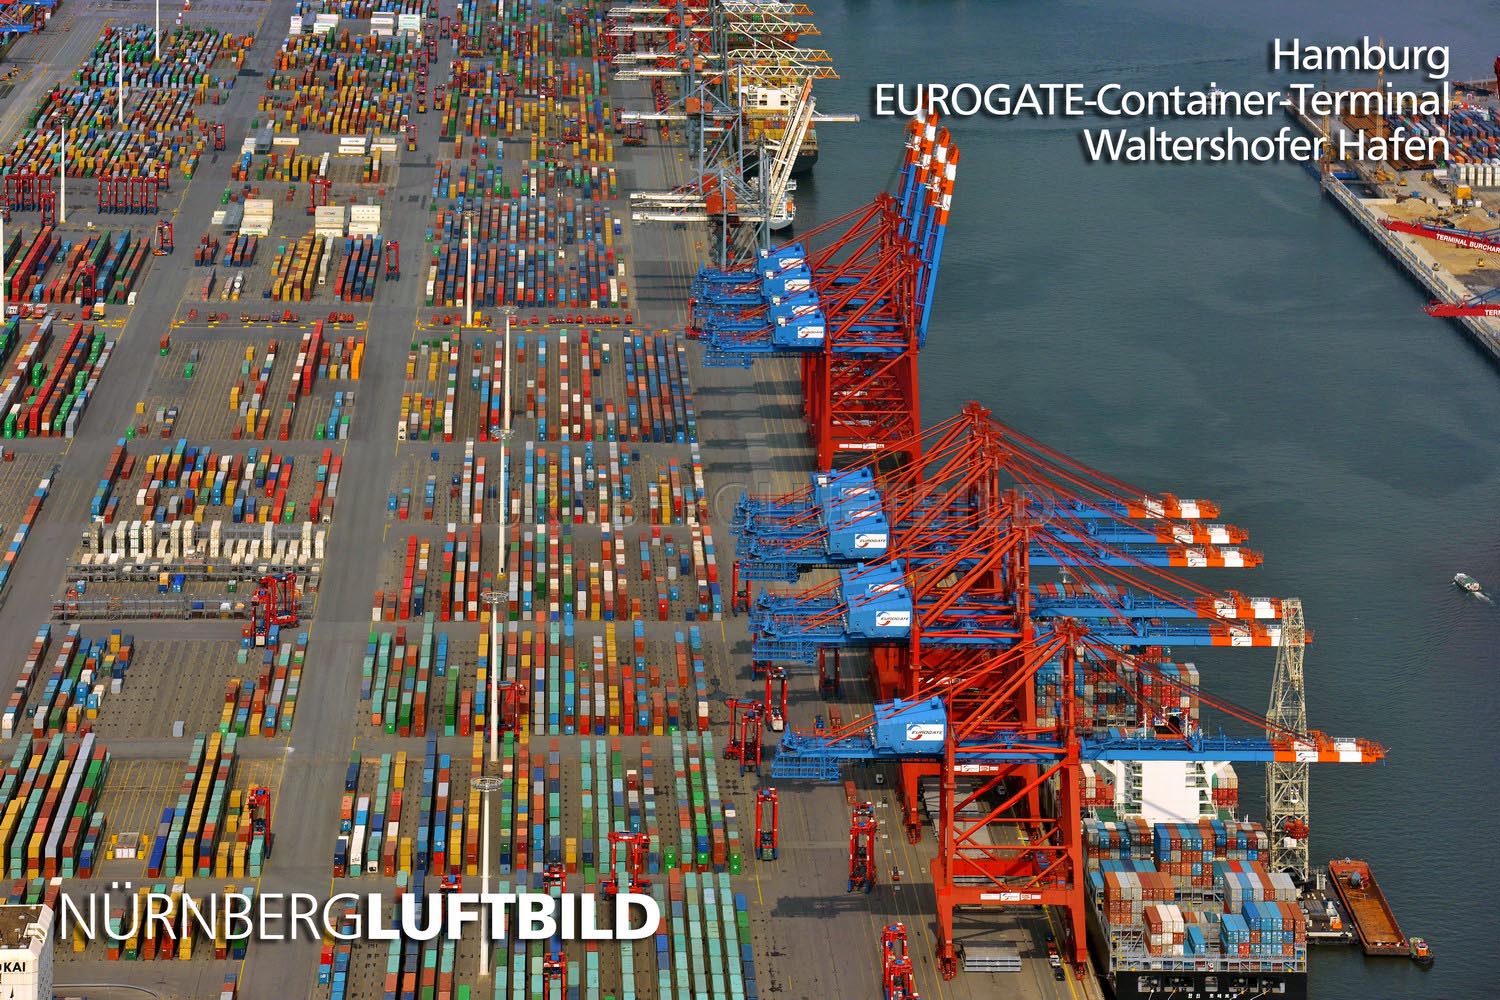 EUROGATE Container Terminal, Waltershofer Hafen, Hamburg